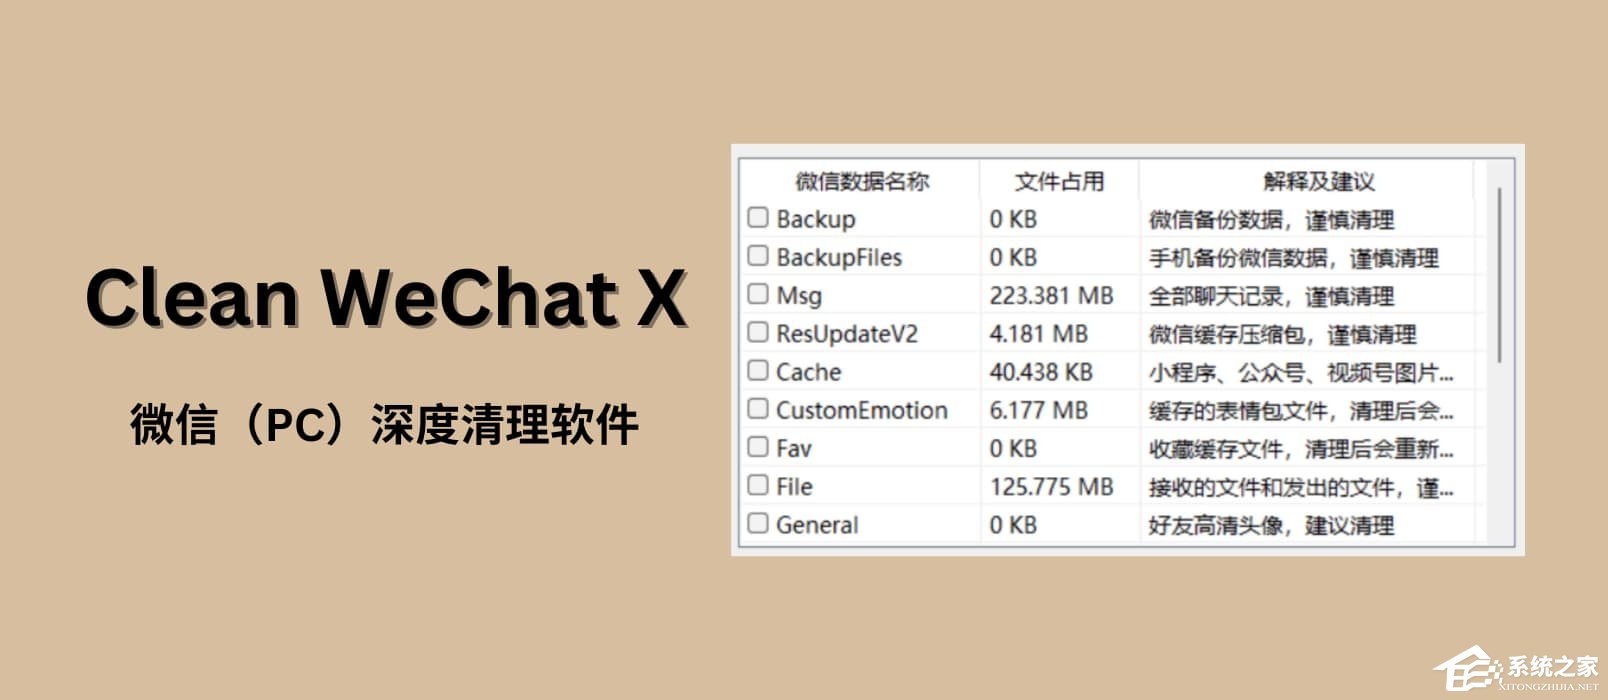 Clean WeChat X